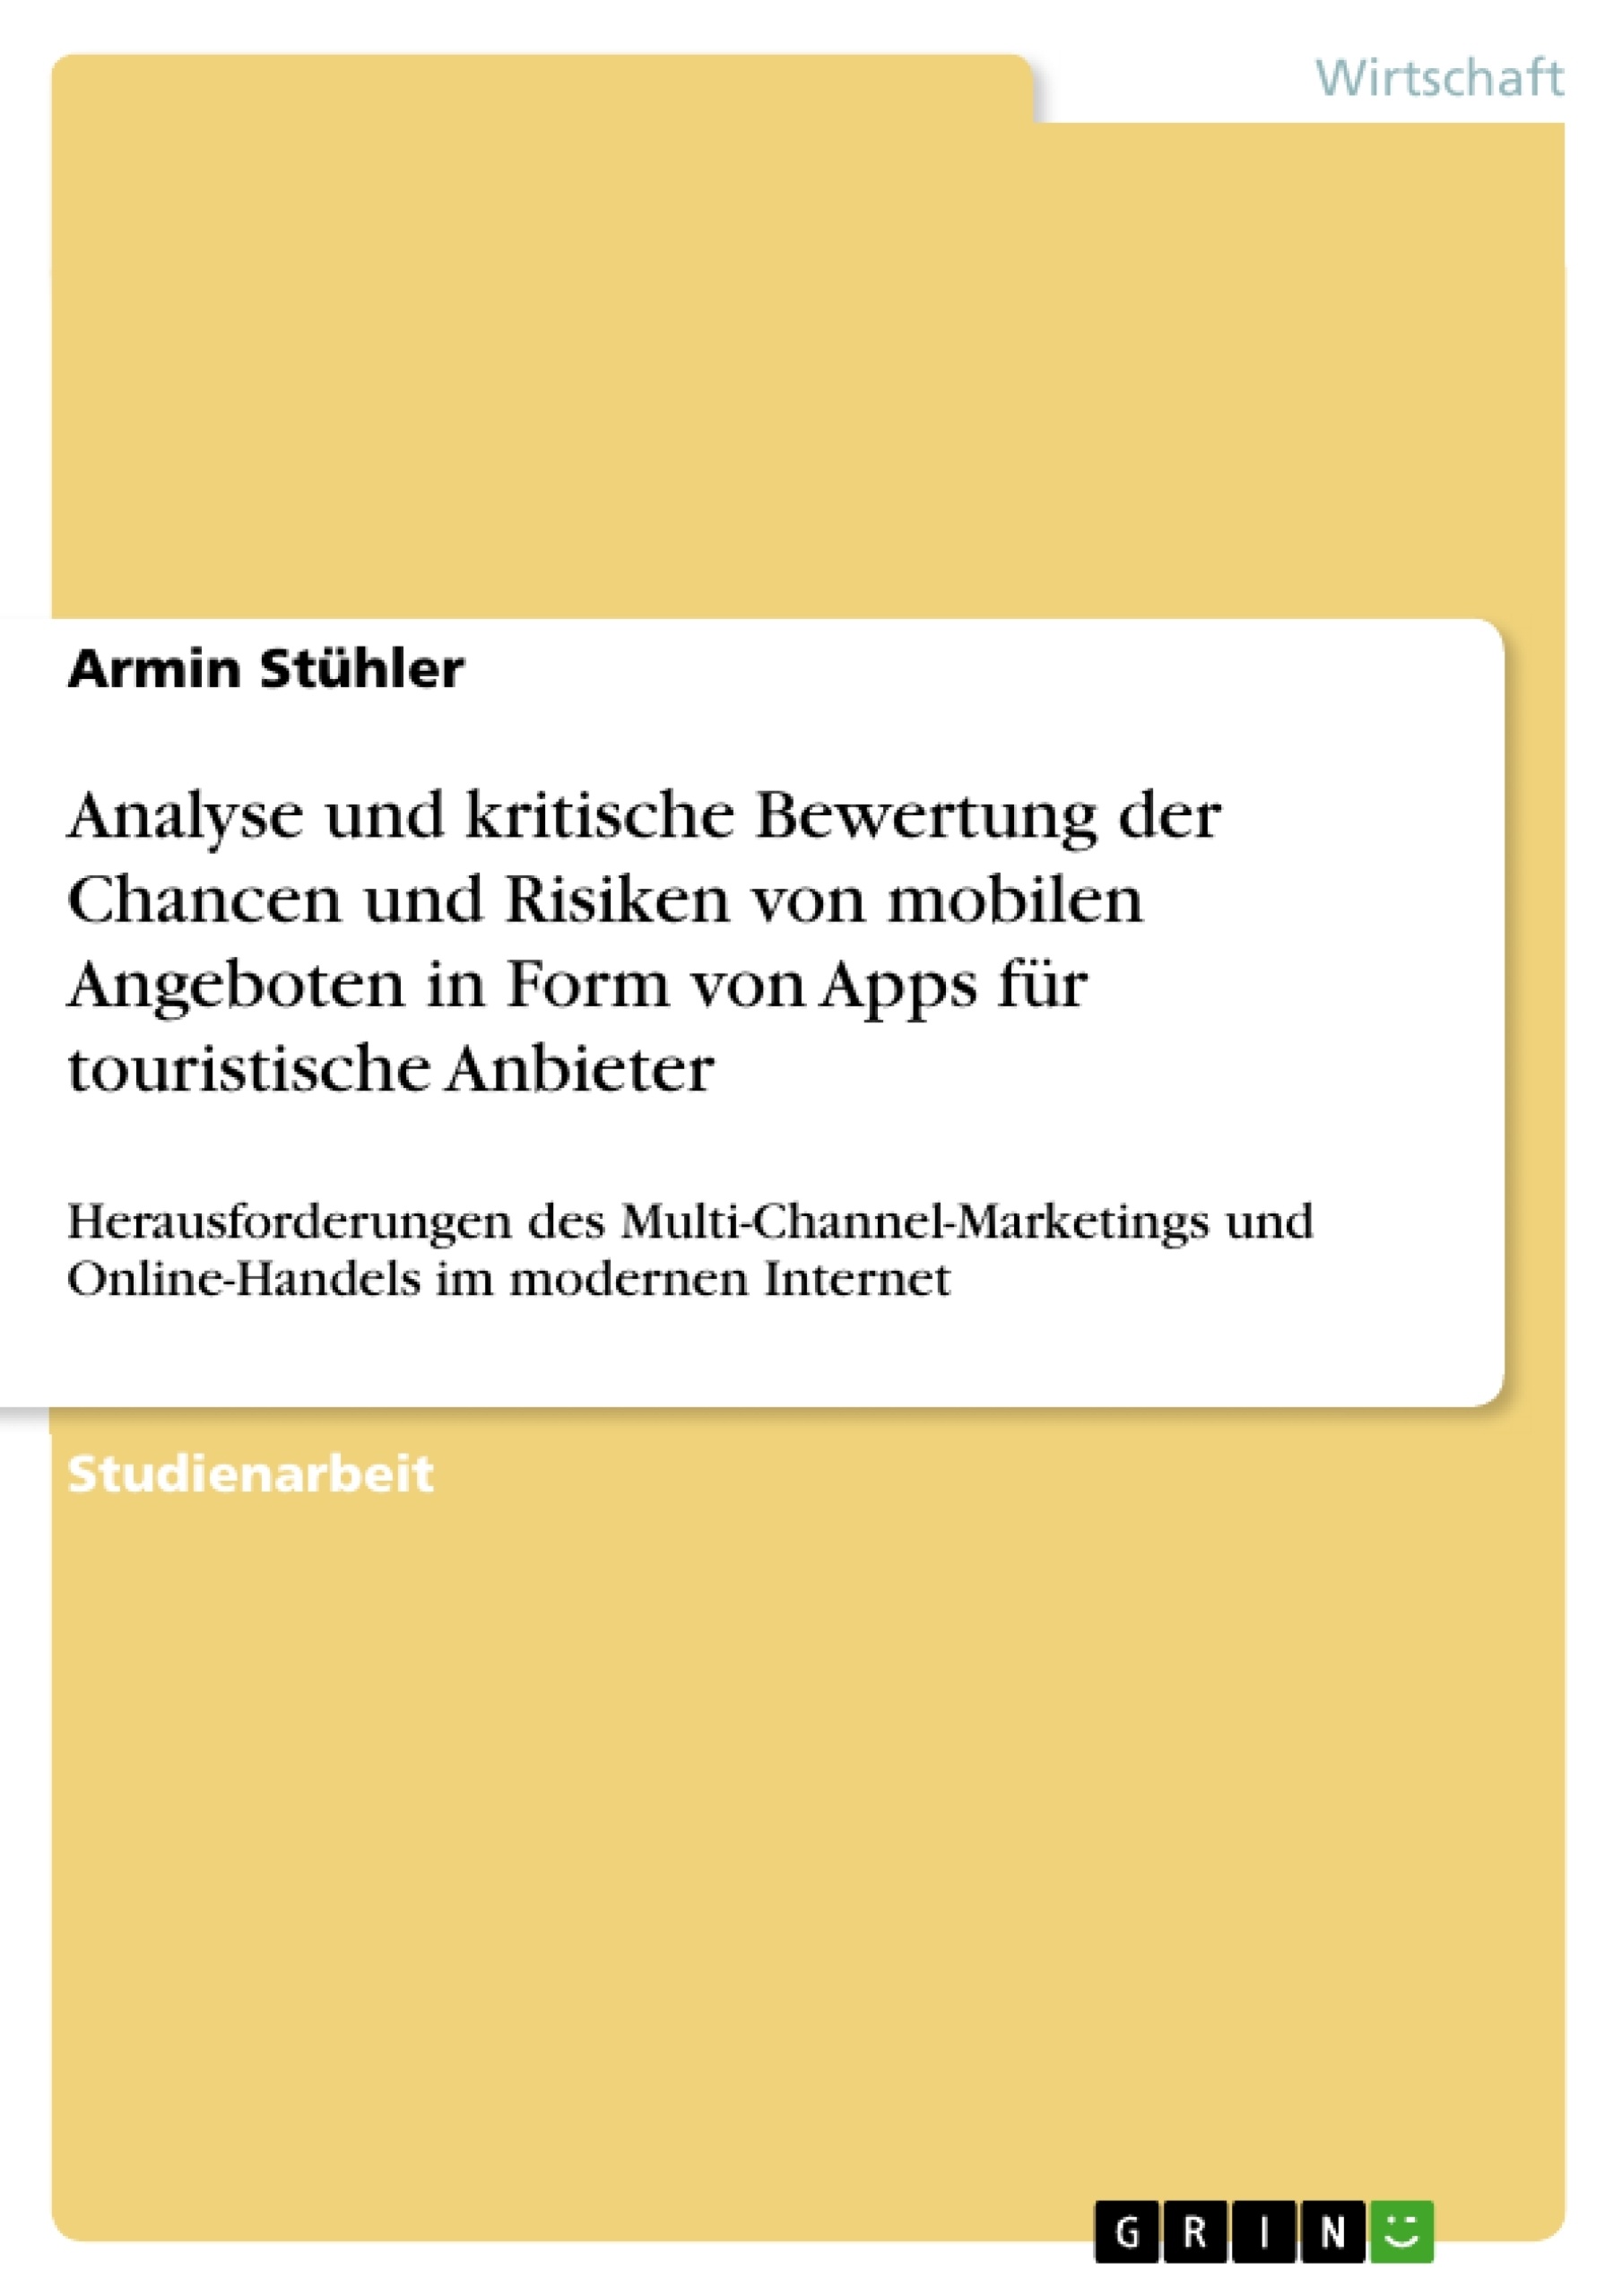 Title: Analyse und kritische Bewertung der Chancen und Risiken von mobilen Angeboten in Form von Apps für touristische Anbieter